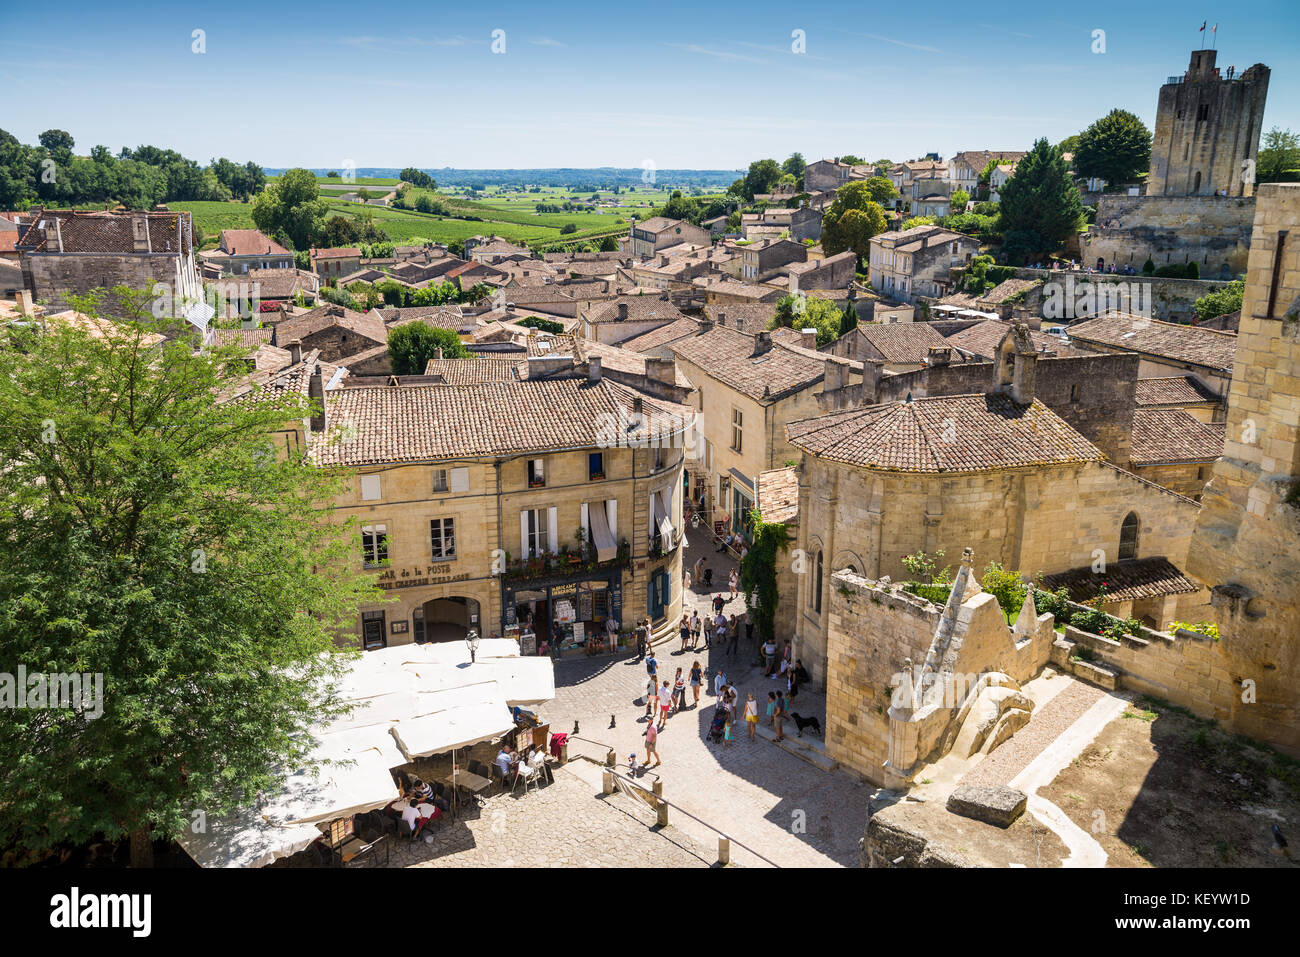 medieval town of Saint Emilion, Dordogne, Aquitaine, France Stock Photo -  Alamy